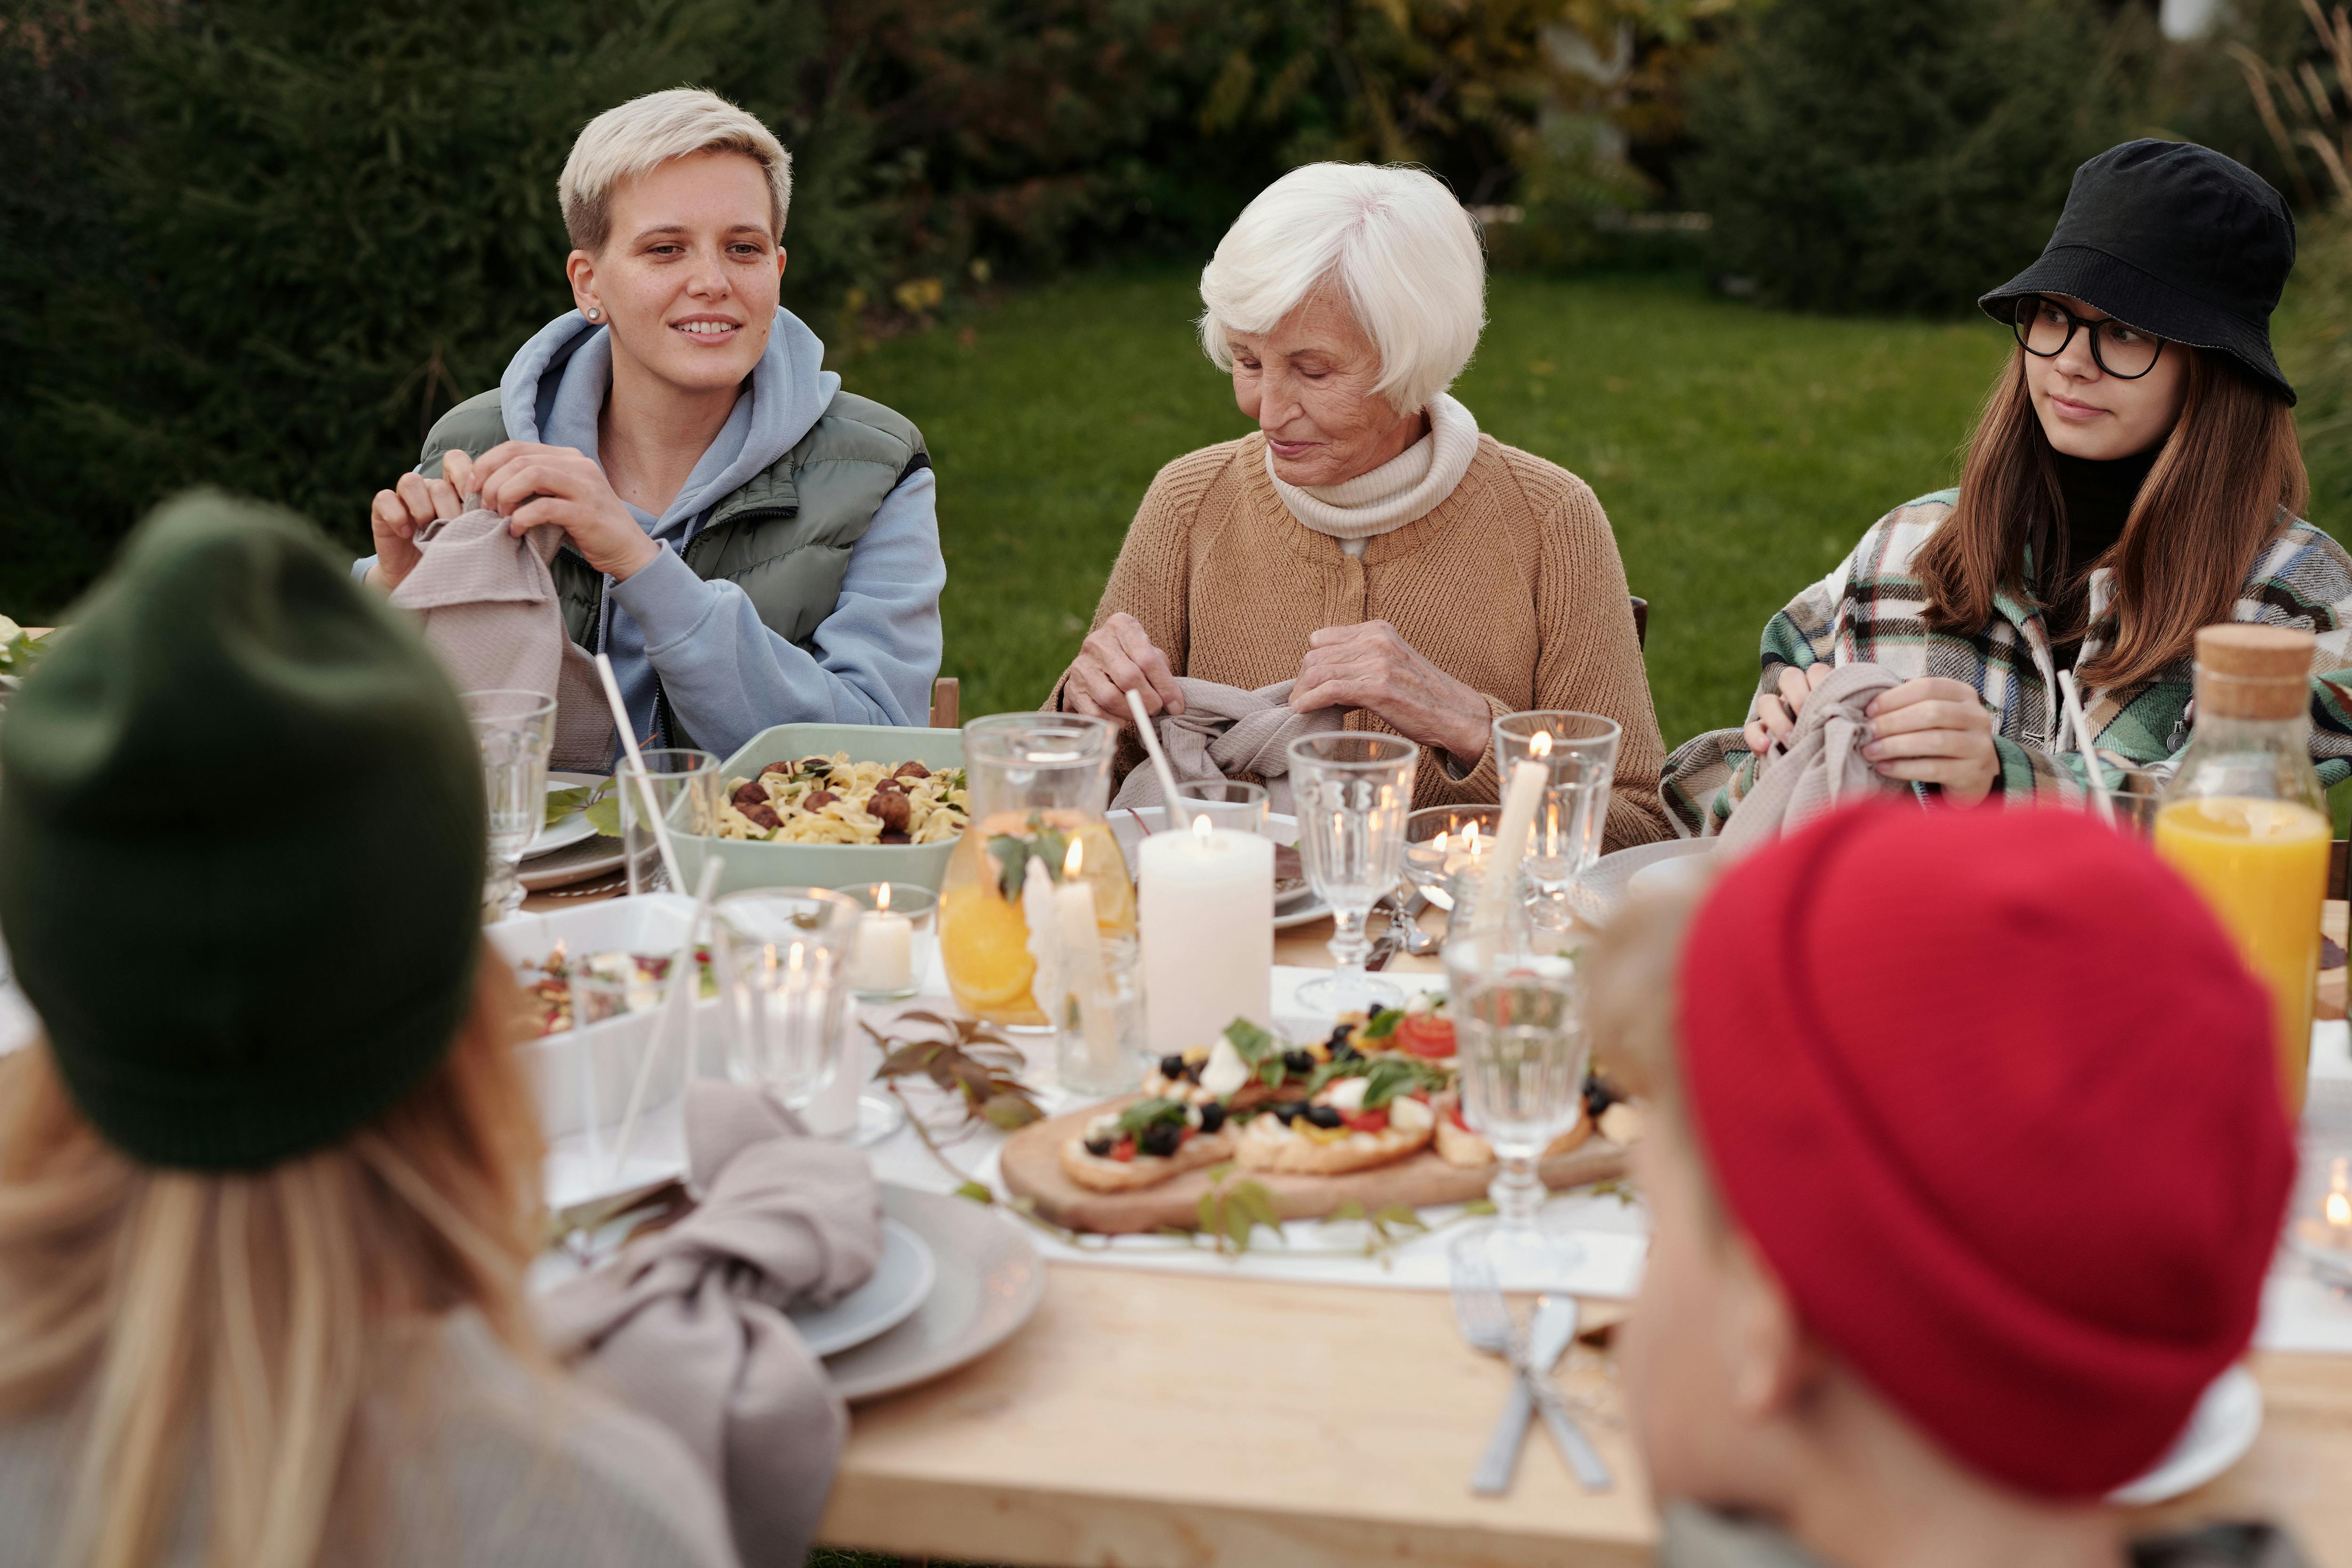 Familienmitglieder versammeln sich zu einer Mahlzeit | Quelle: Pexels